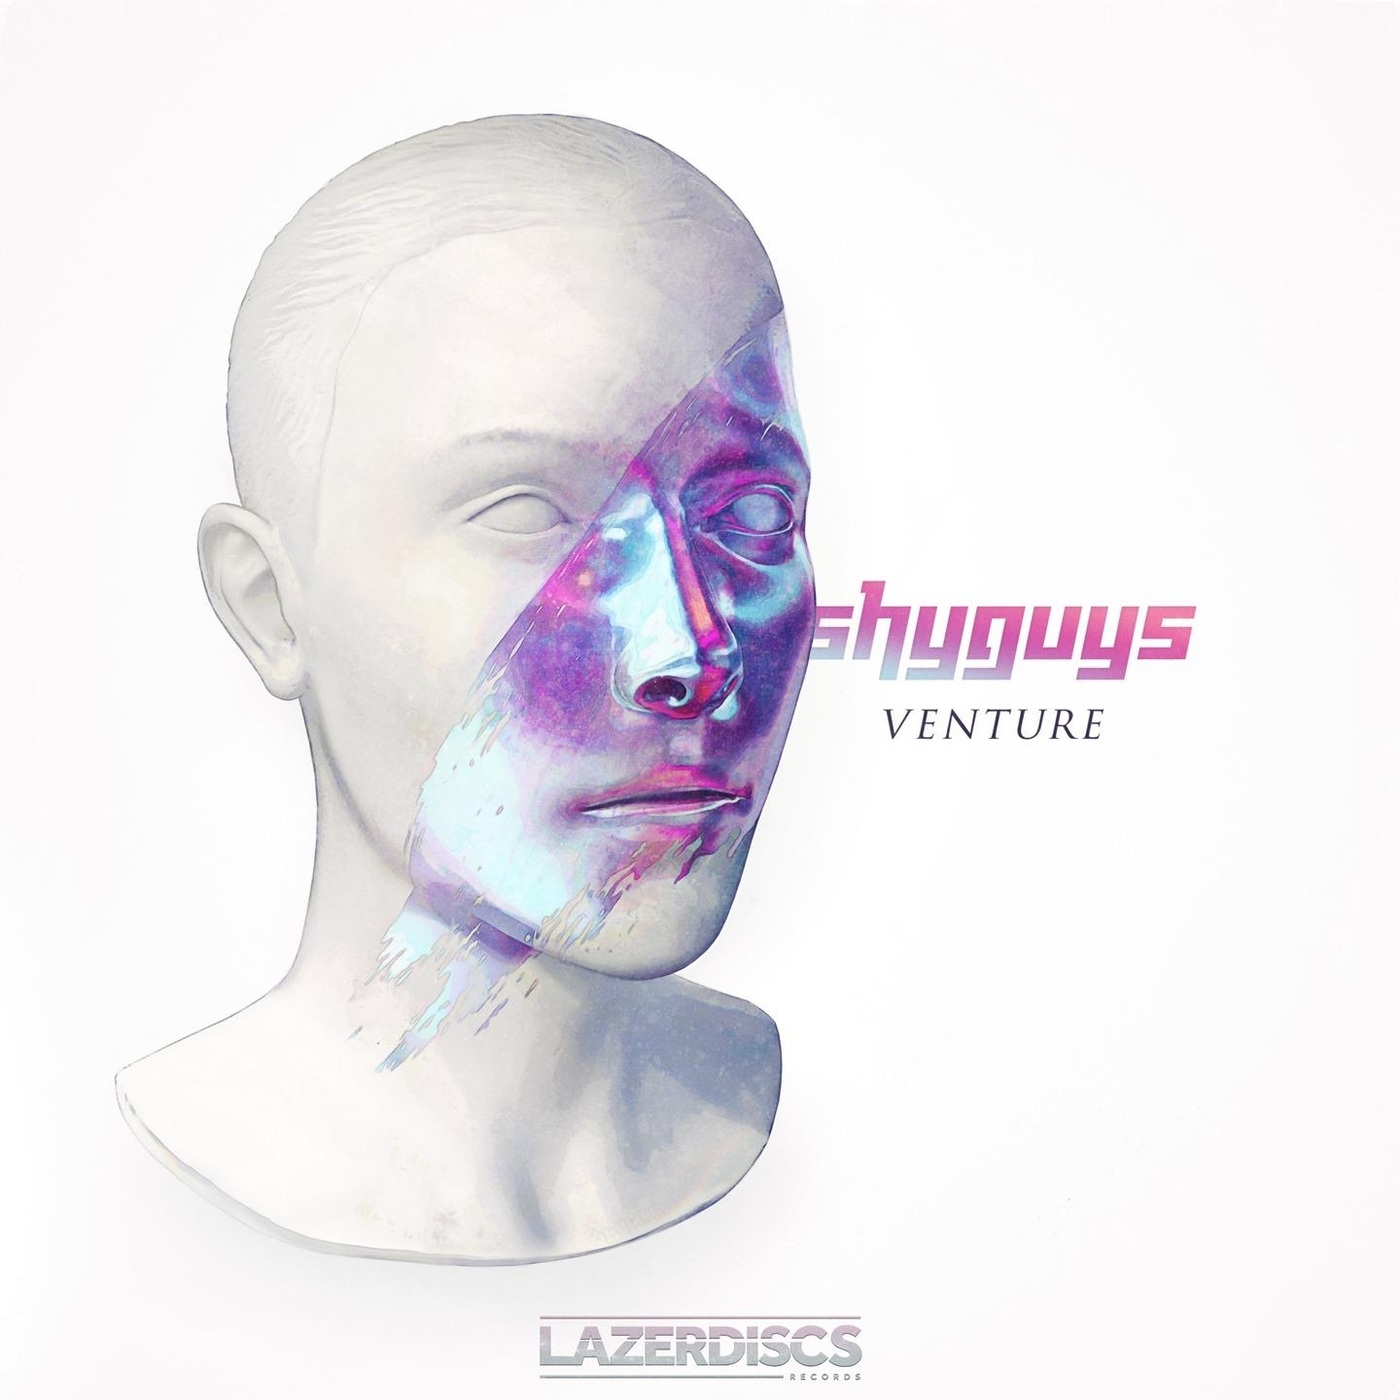 Shyguys - Venture / Lazerdiscs Records